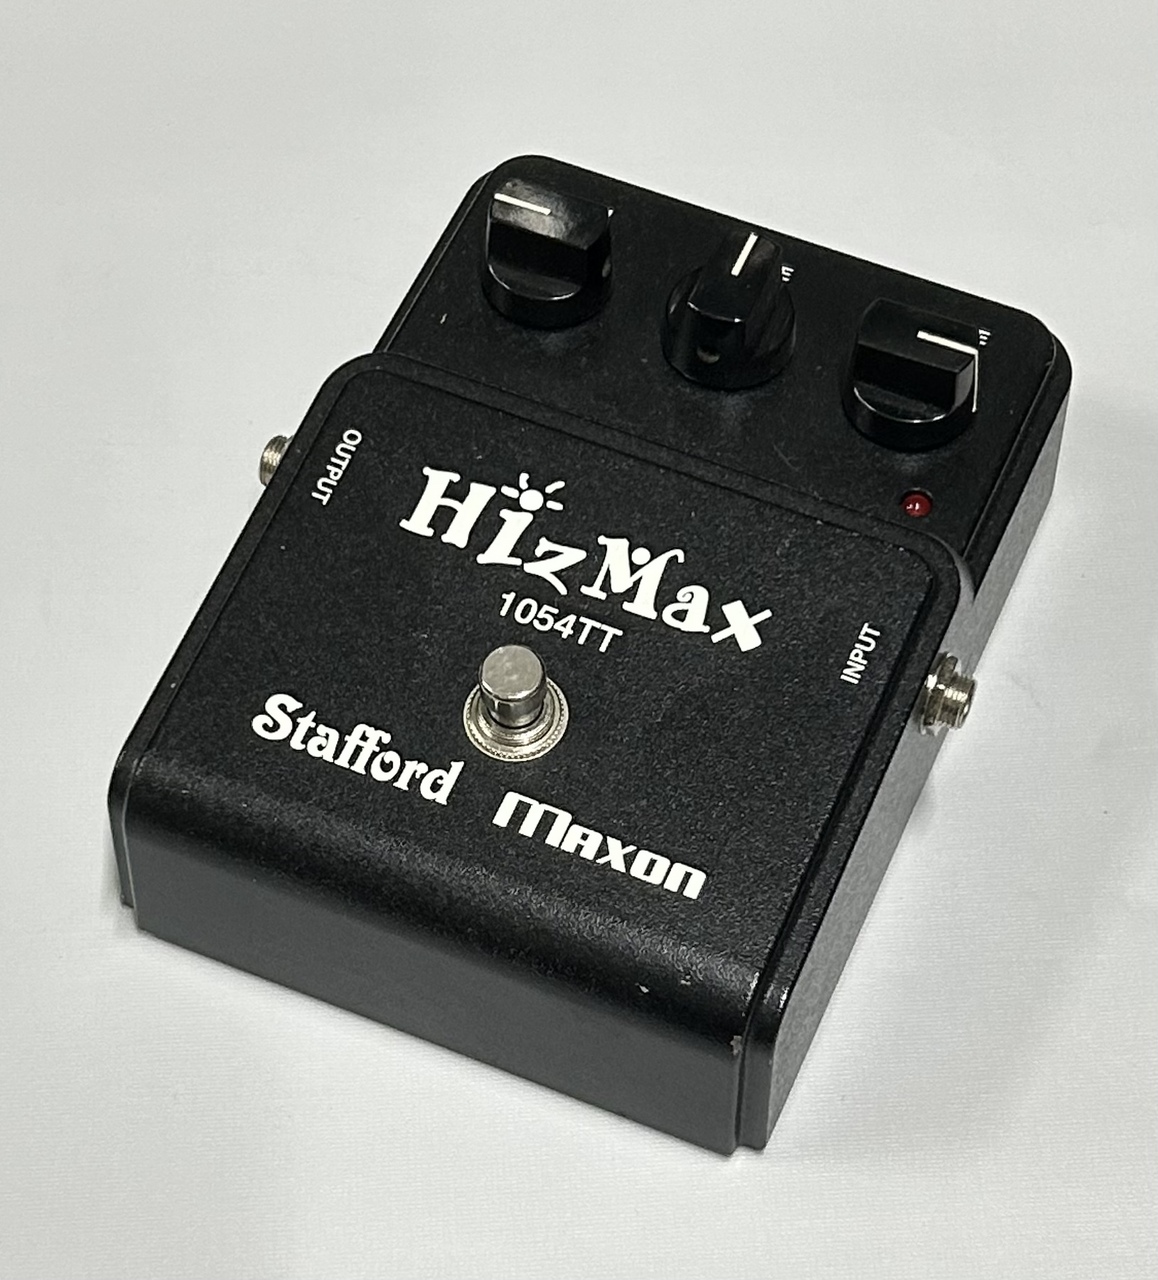 Stafford × Maxon Hizmax 1054TT Charギター